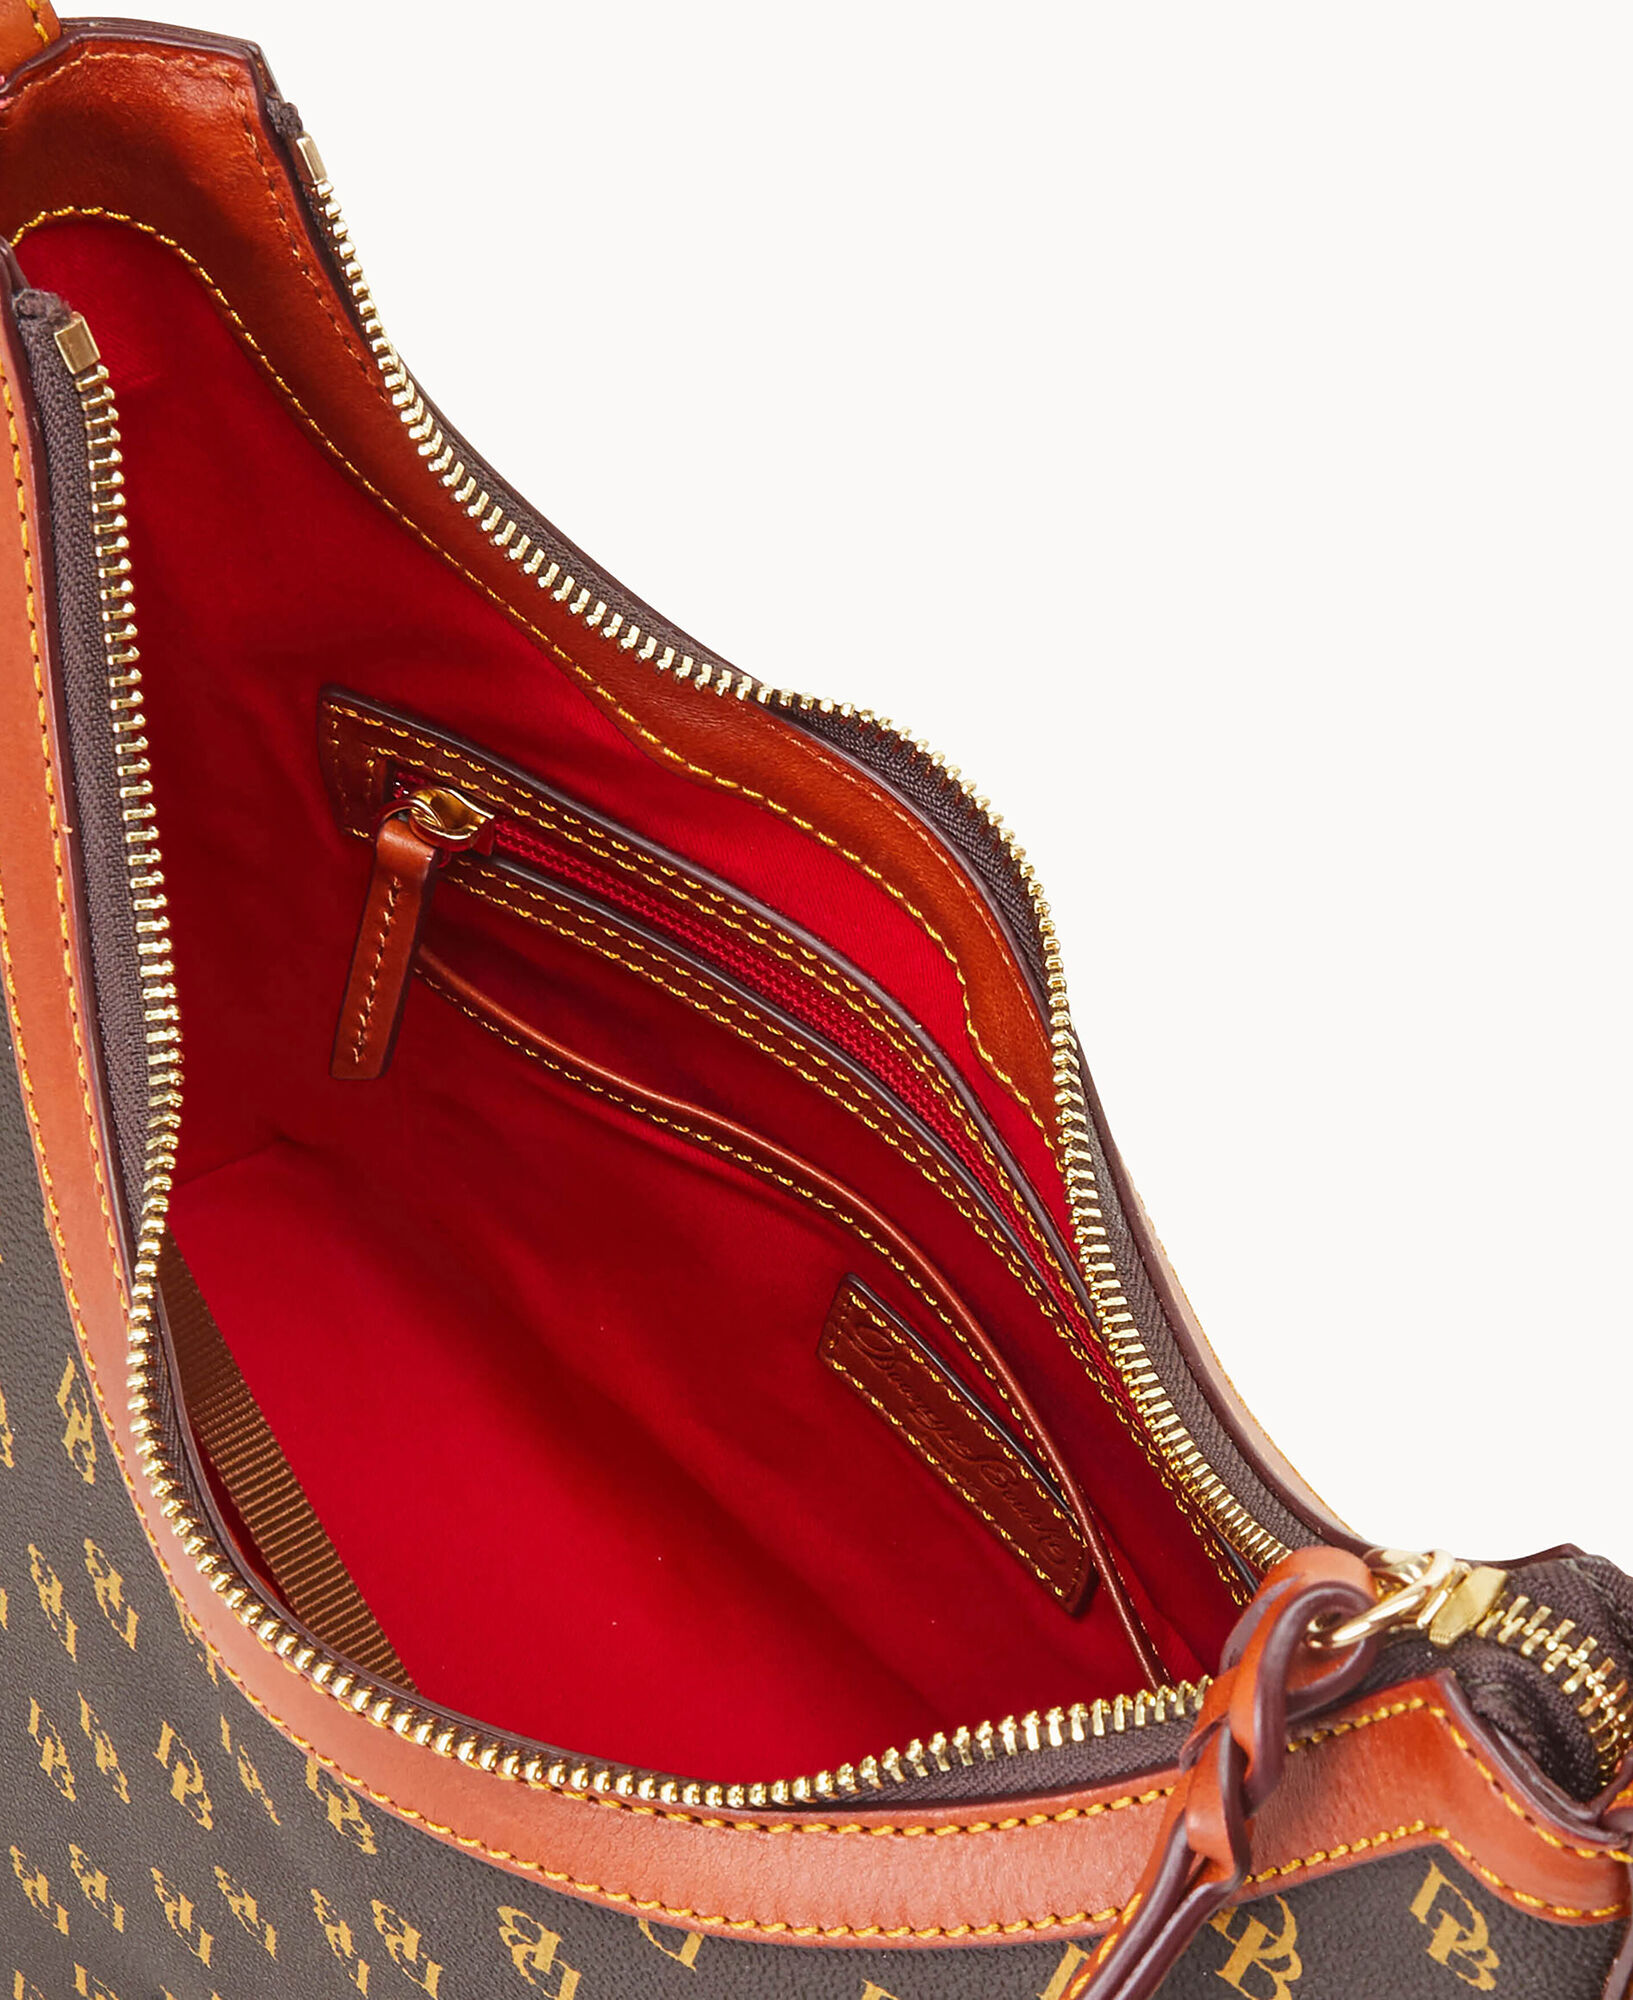 Dooney & Bourke Handbag, Gretta Shoulder Bag - Bone: Handbags